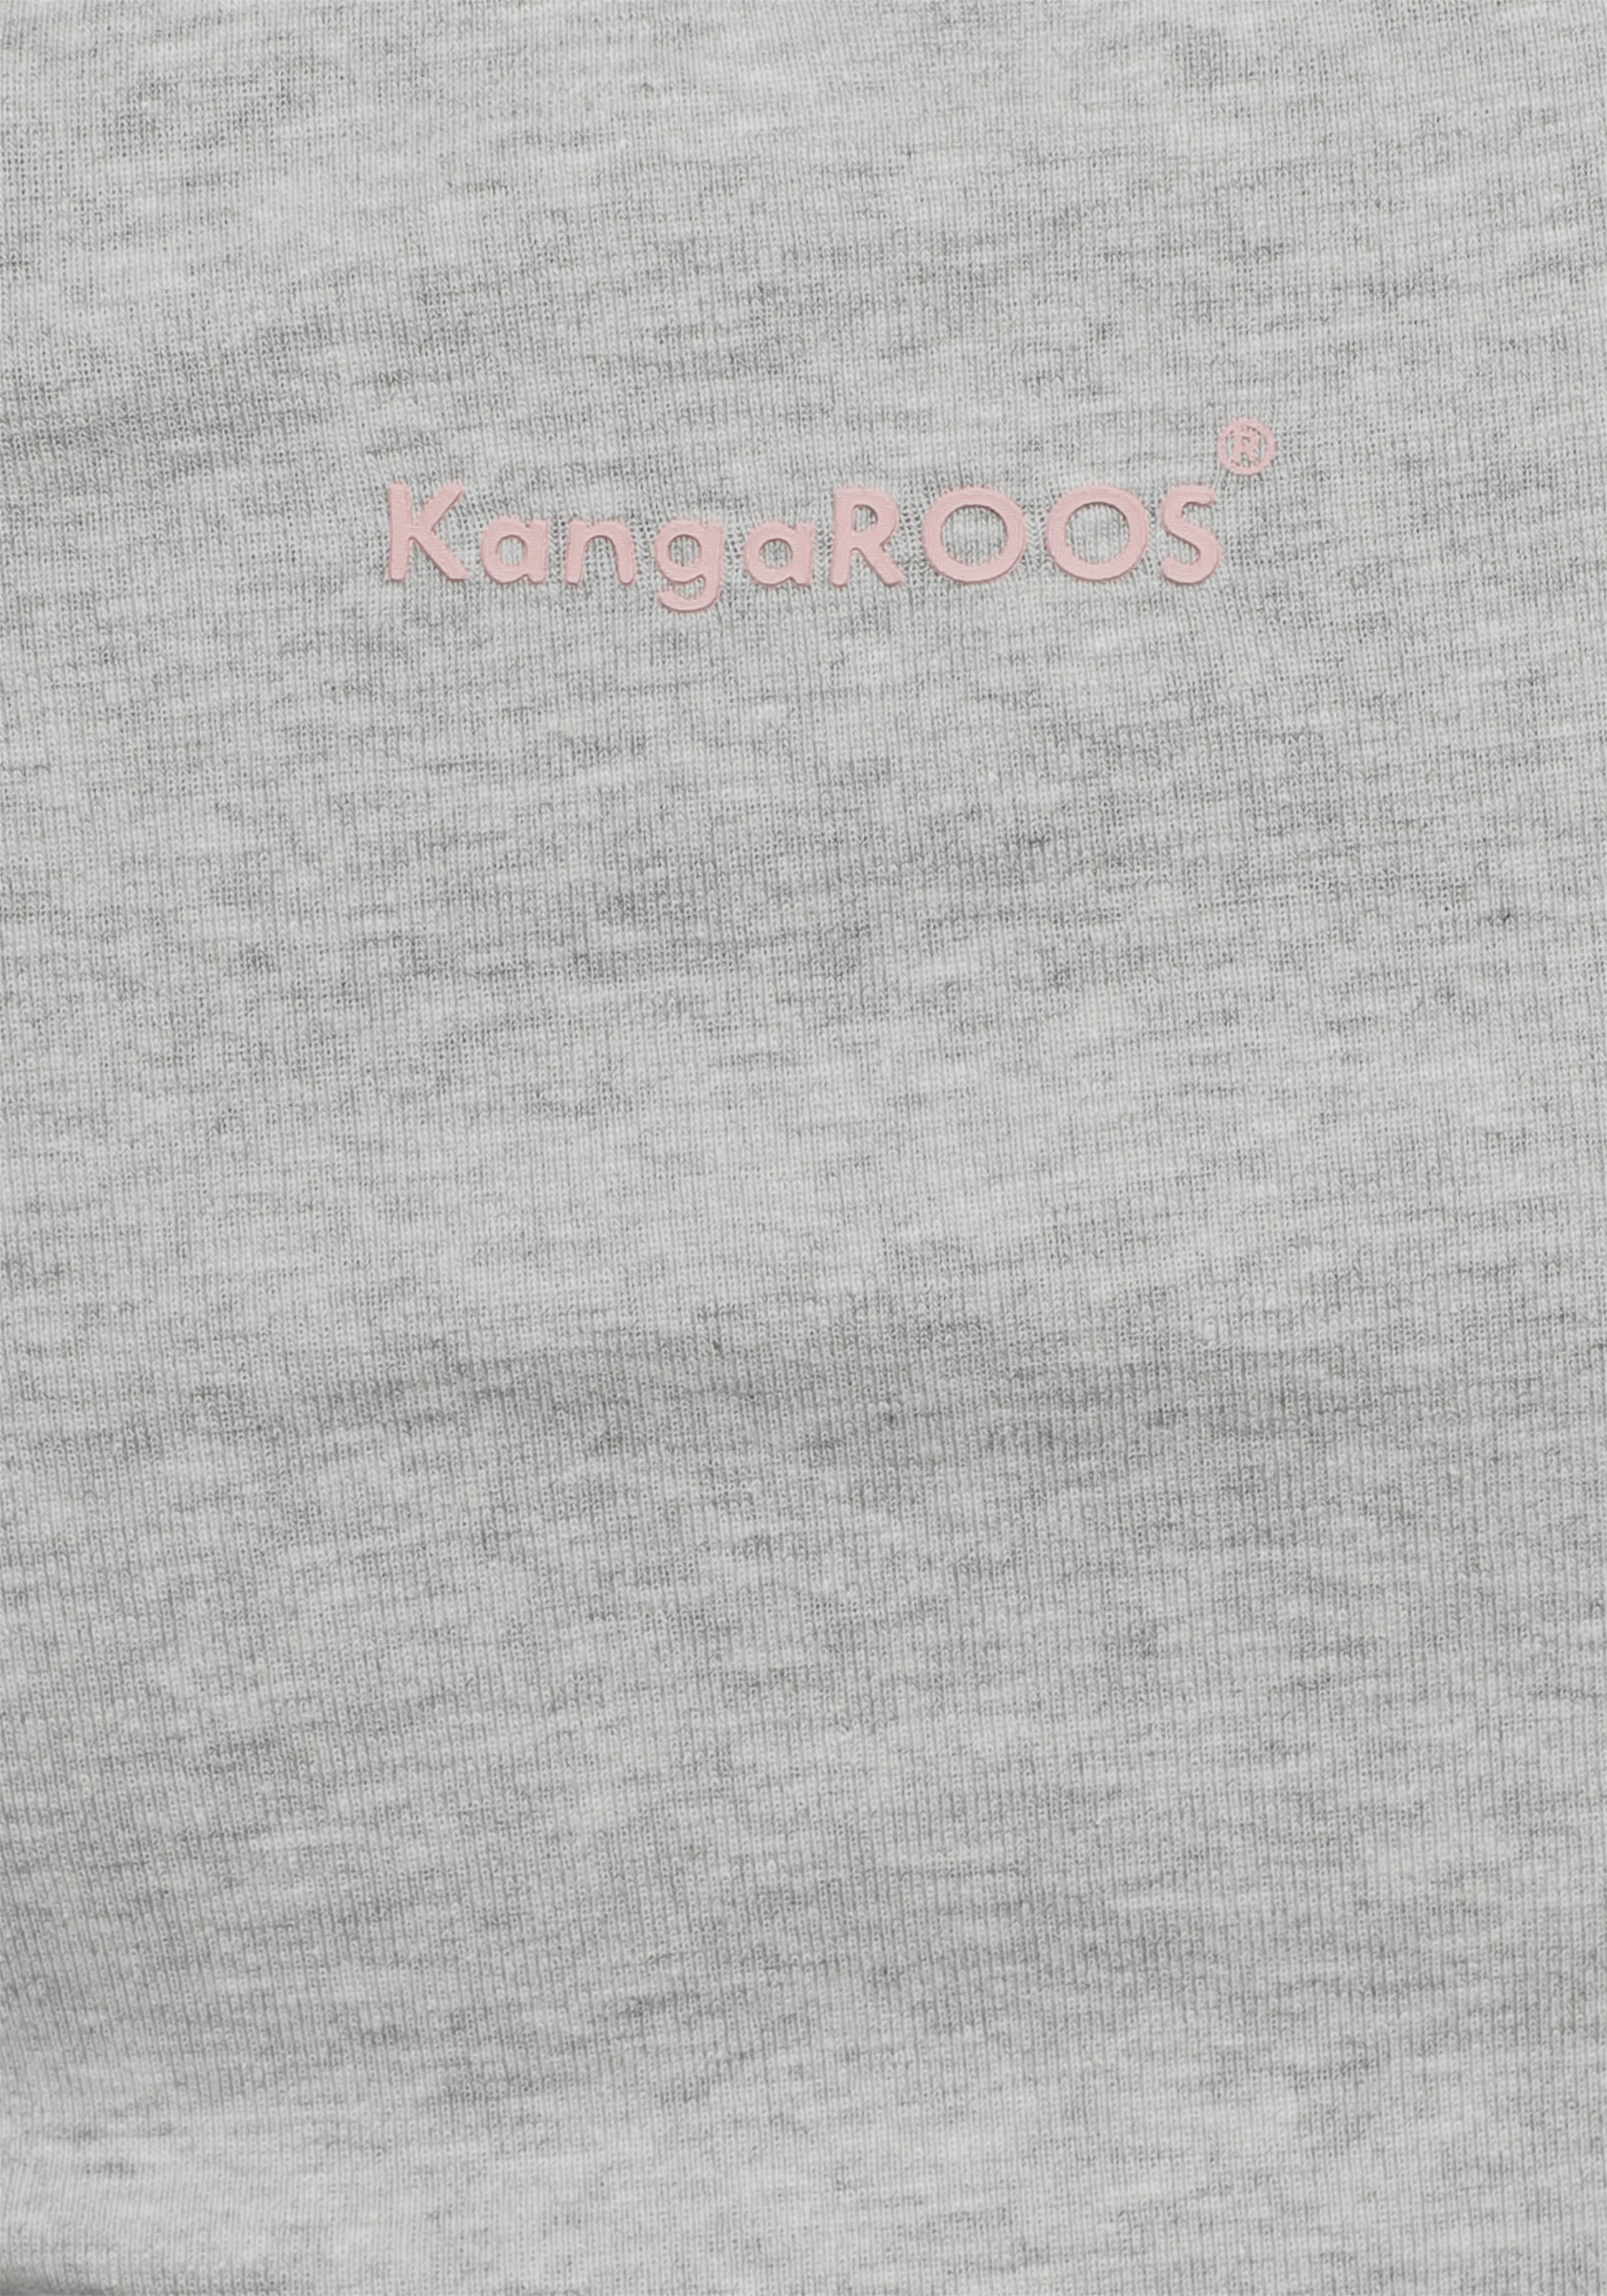 KangaROOS Rundhalsshirt, mit großem im ♕ bei Collage-Look Logodruck